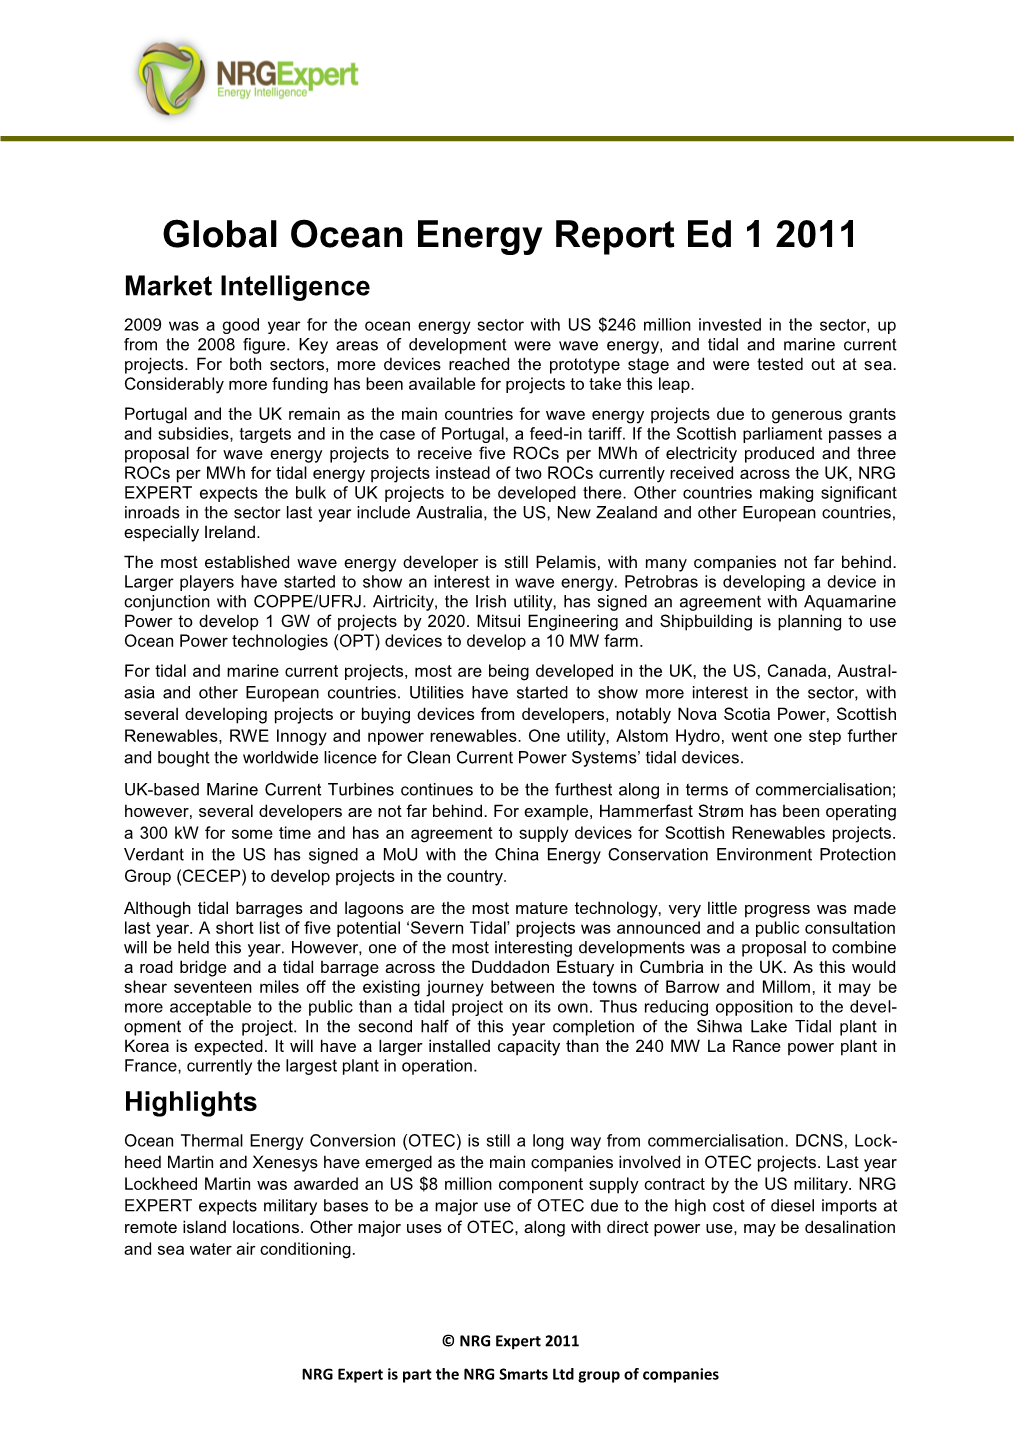 Download the Ocean Energy Report Brochure